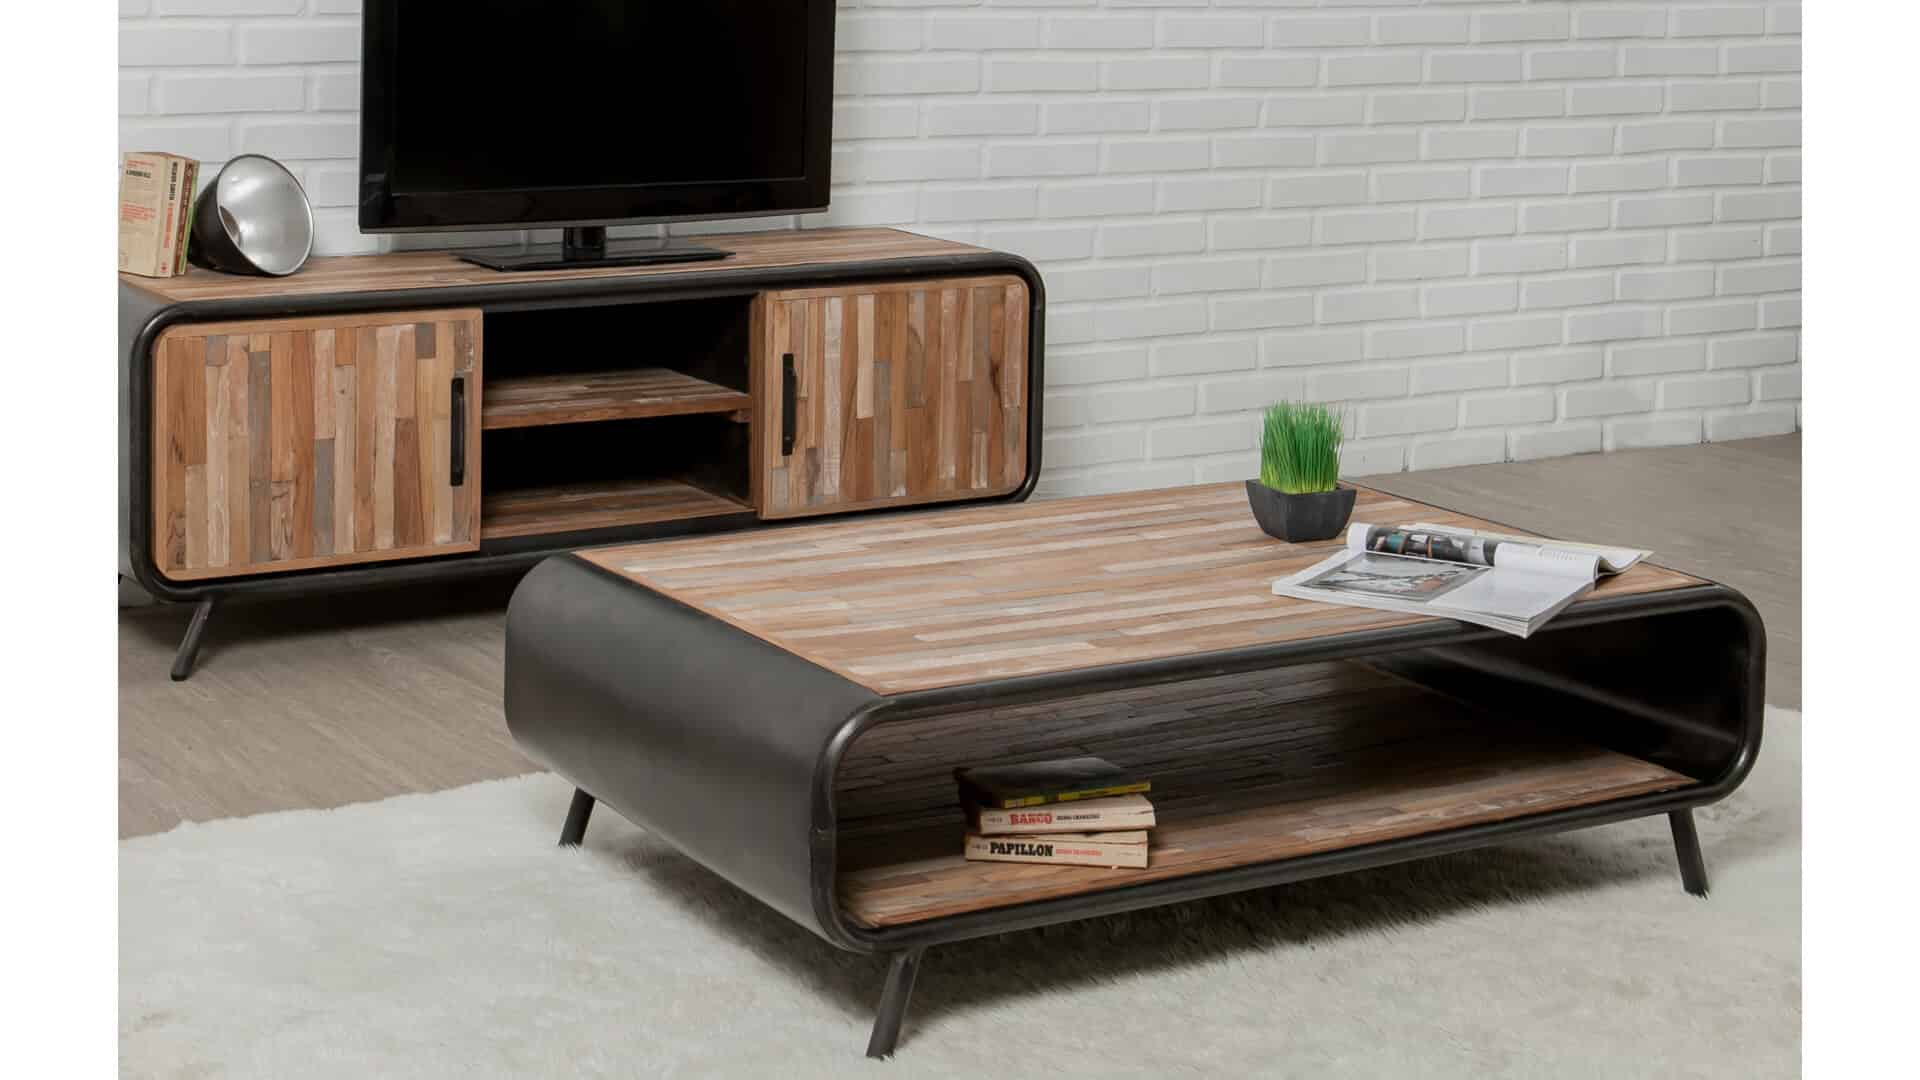 Quels types de meubles choisir pour un intérieur moderne - Futur